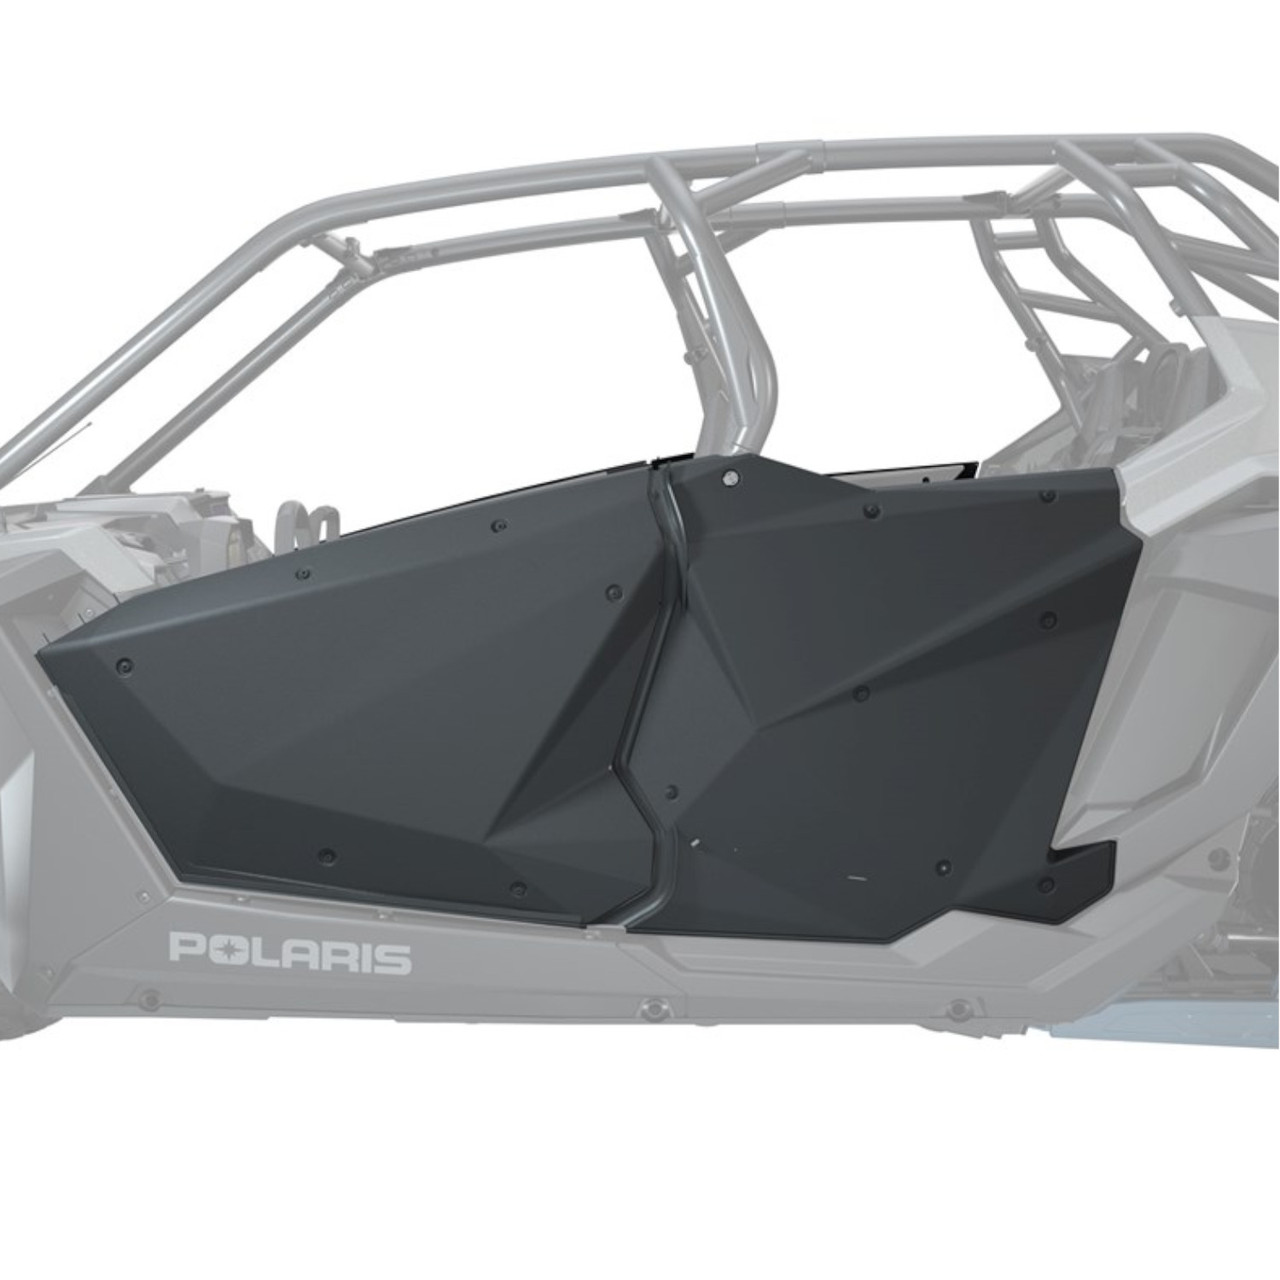 Polaris New OEM, Aluminum Doors, 4 Seat, 12 Gauge Stamped Aluminum, 2884660-458